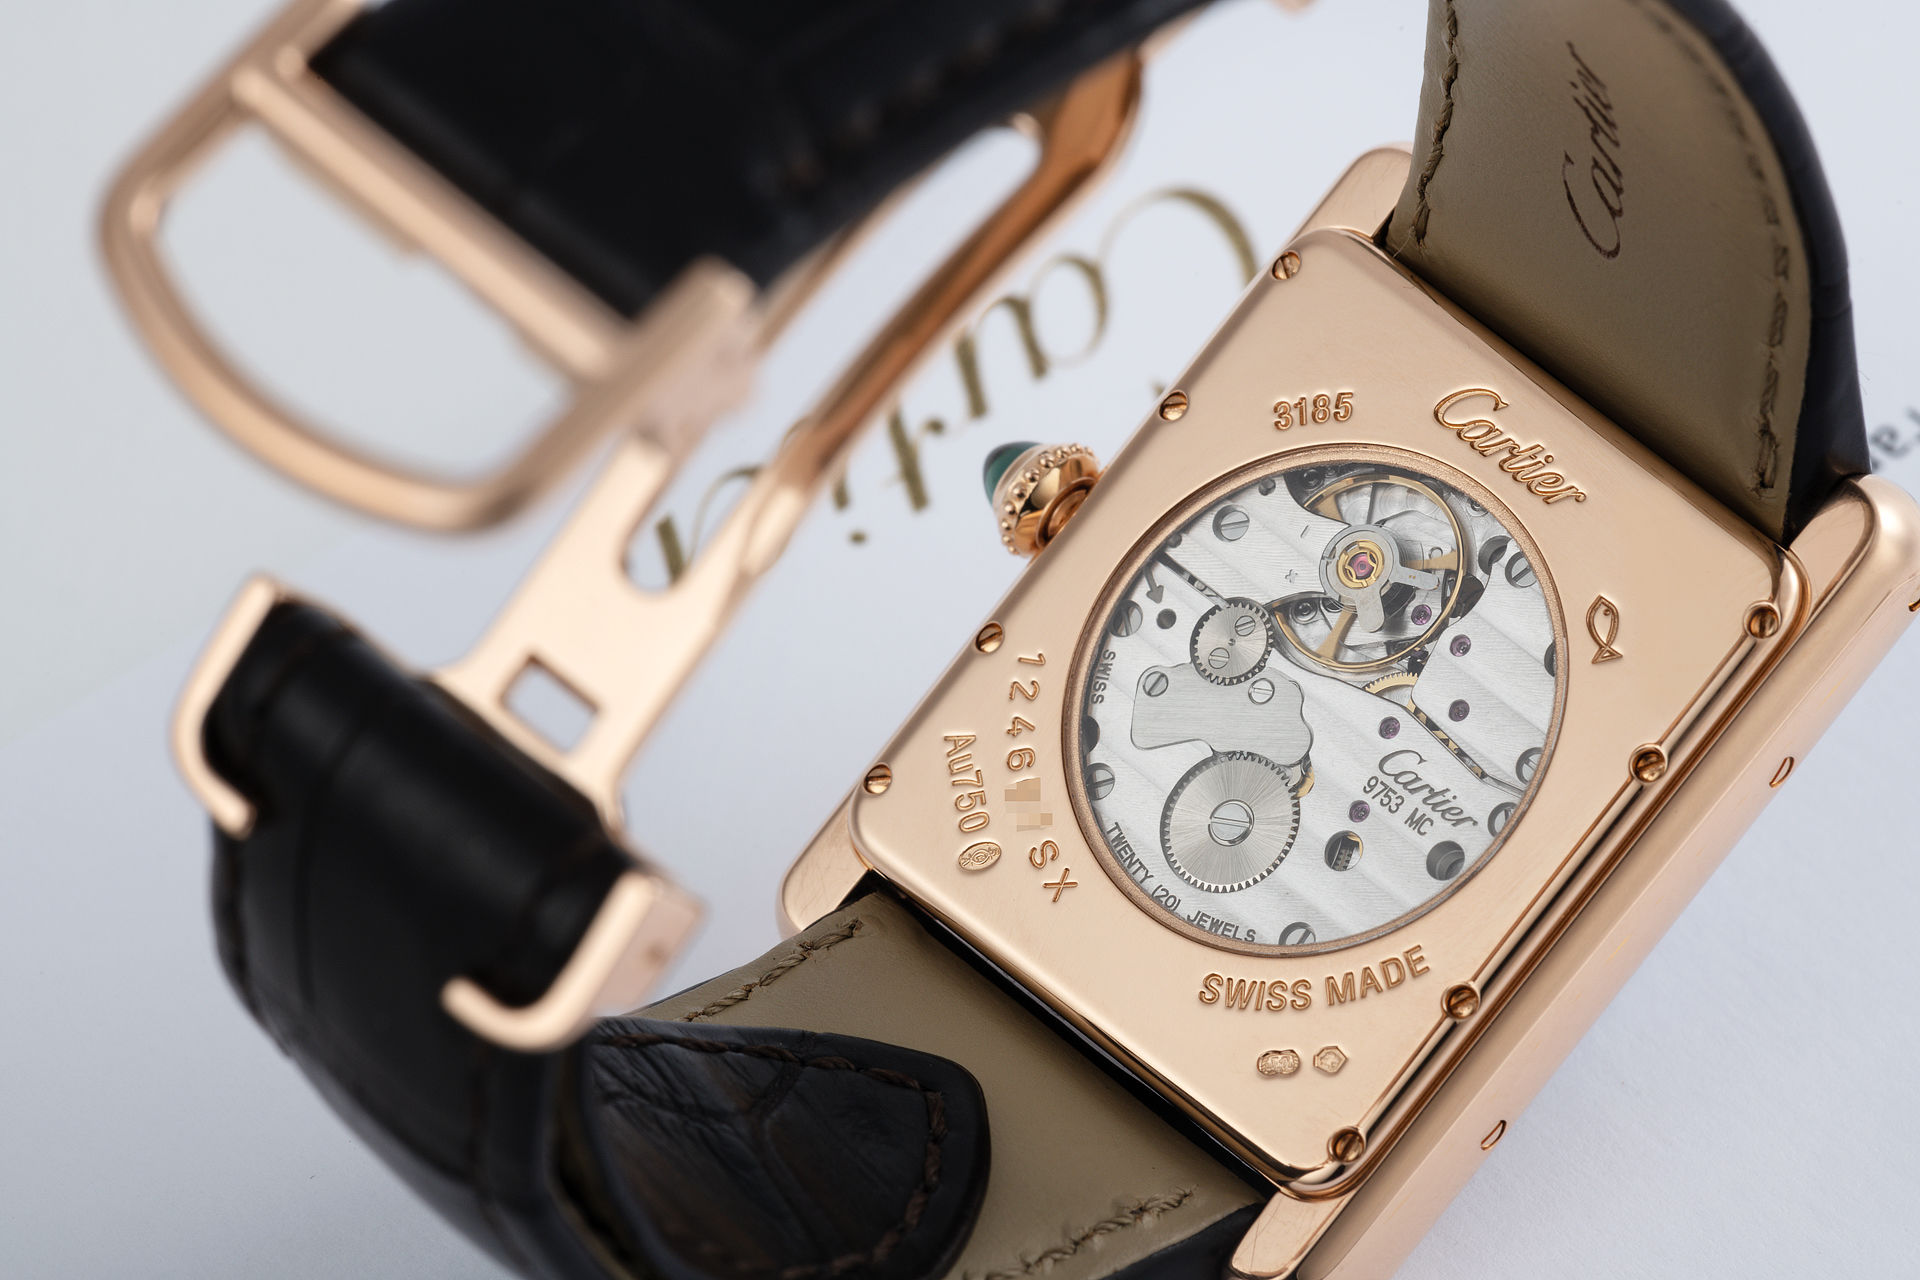 Cartier Tank Louis XL 39.2x30.0mm W1560003 18K Rose Gold Men's Watch